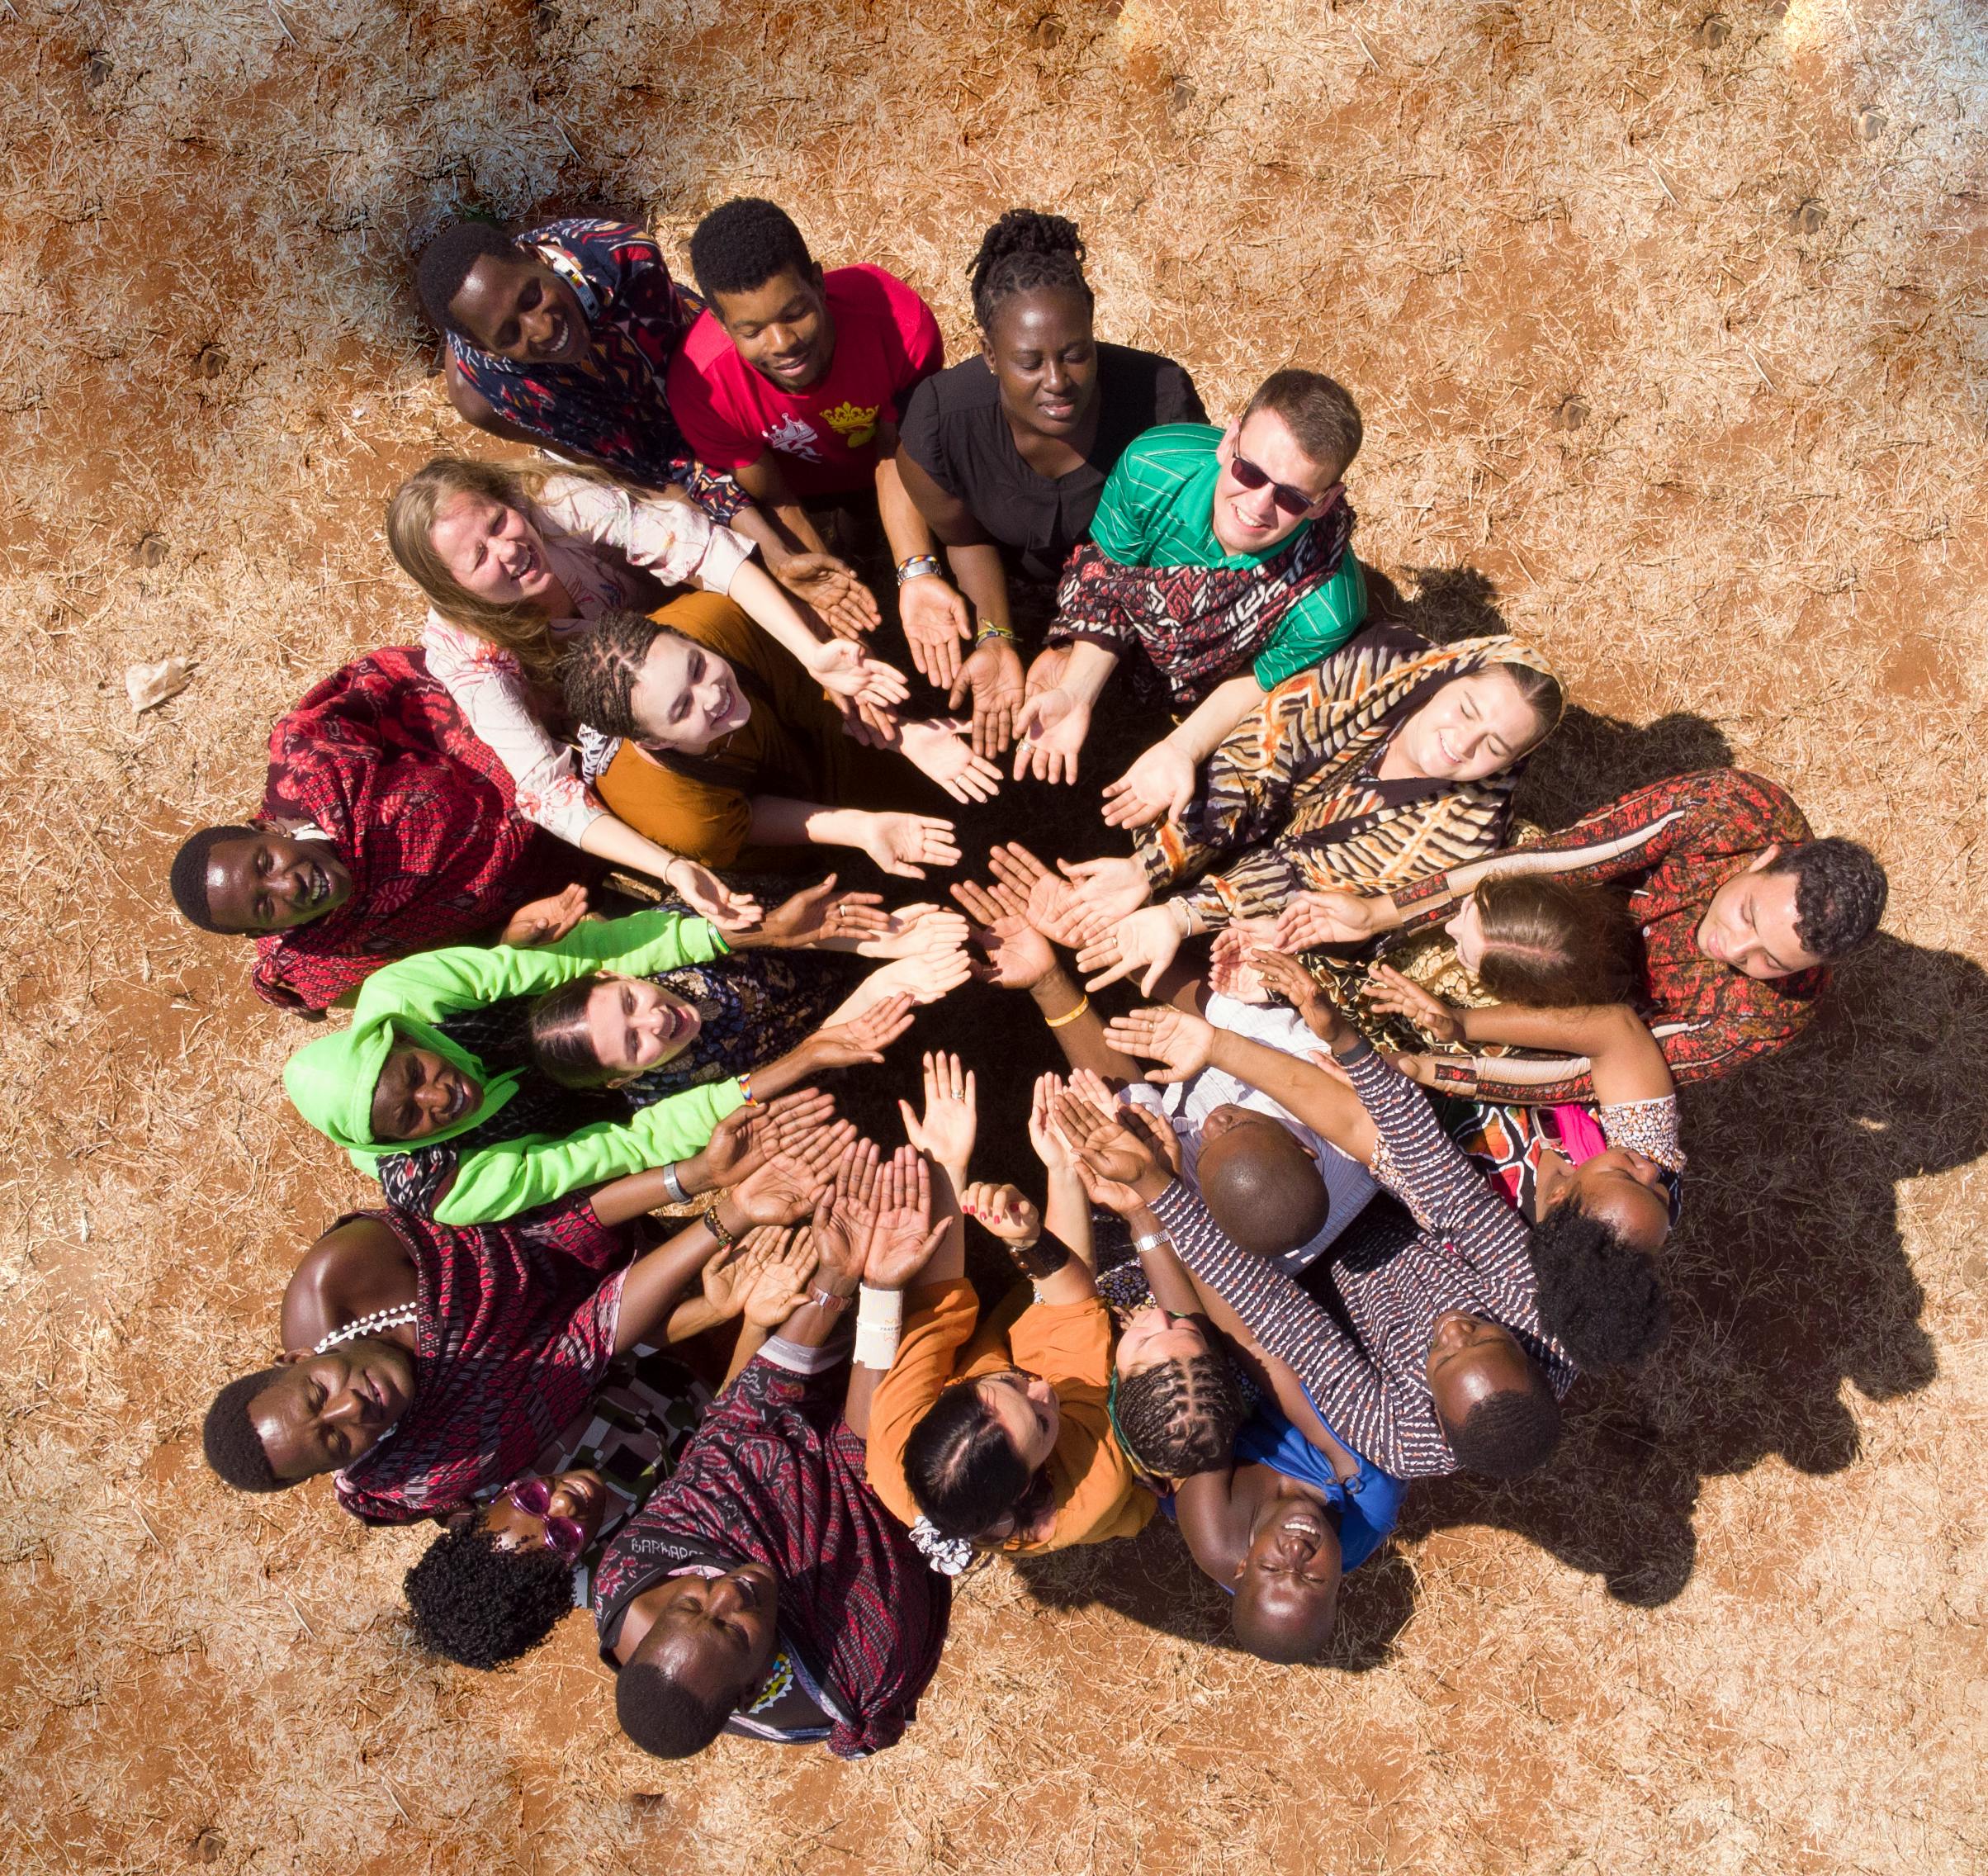 Verschiedenartige Gruppe im Kreis, die Hände zusammengelegt, von oben auf sandigem Boden gesehen.